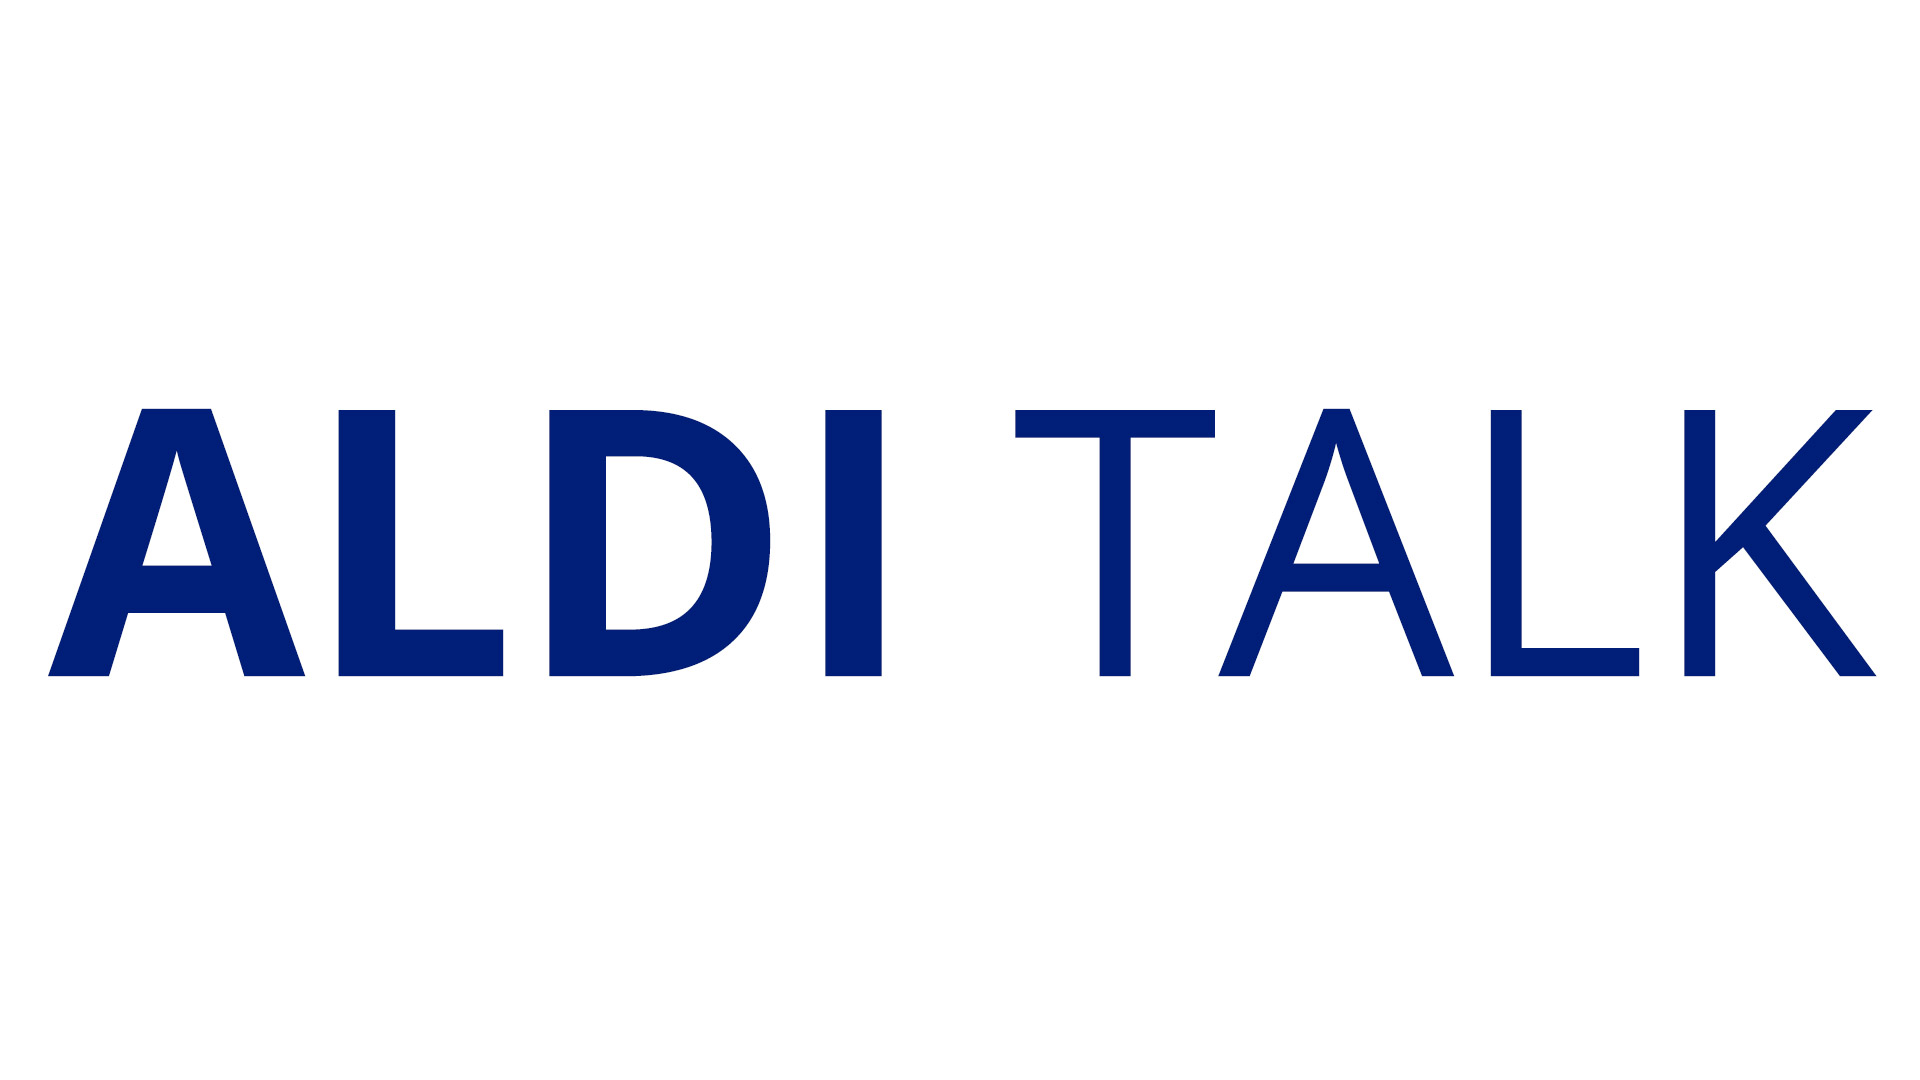 Aldi Talk Surfstick Und Daten Flatrate Prepaid Tarife Vergleich